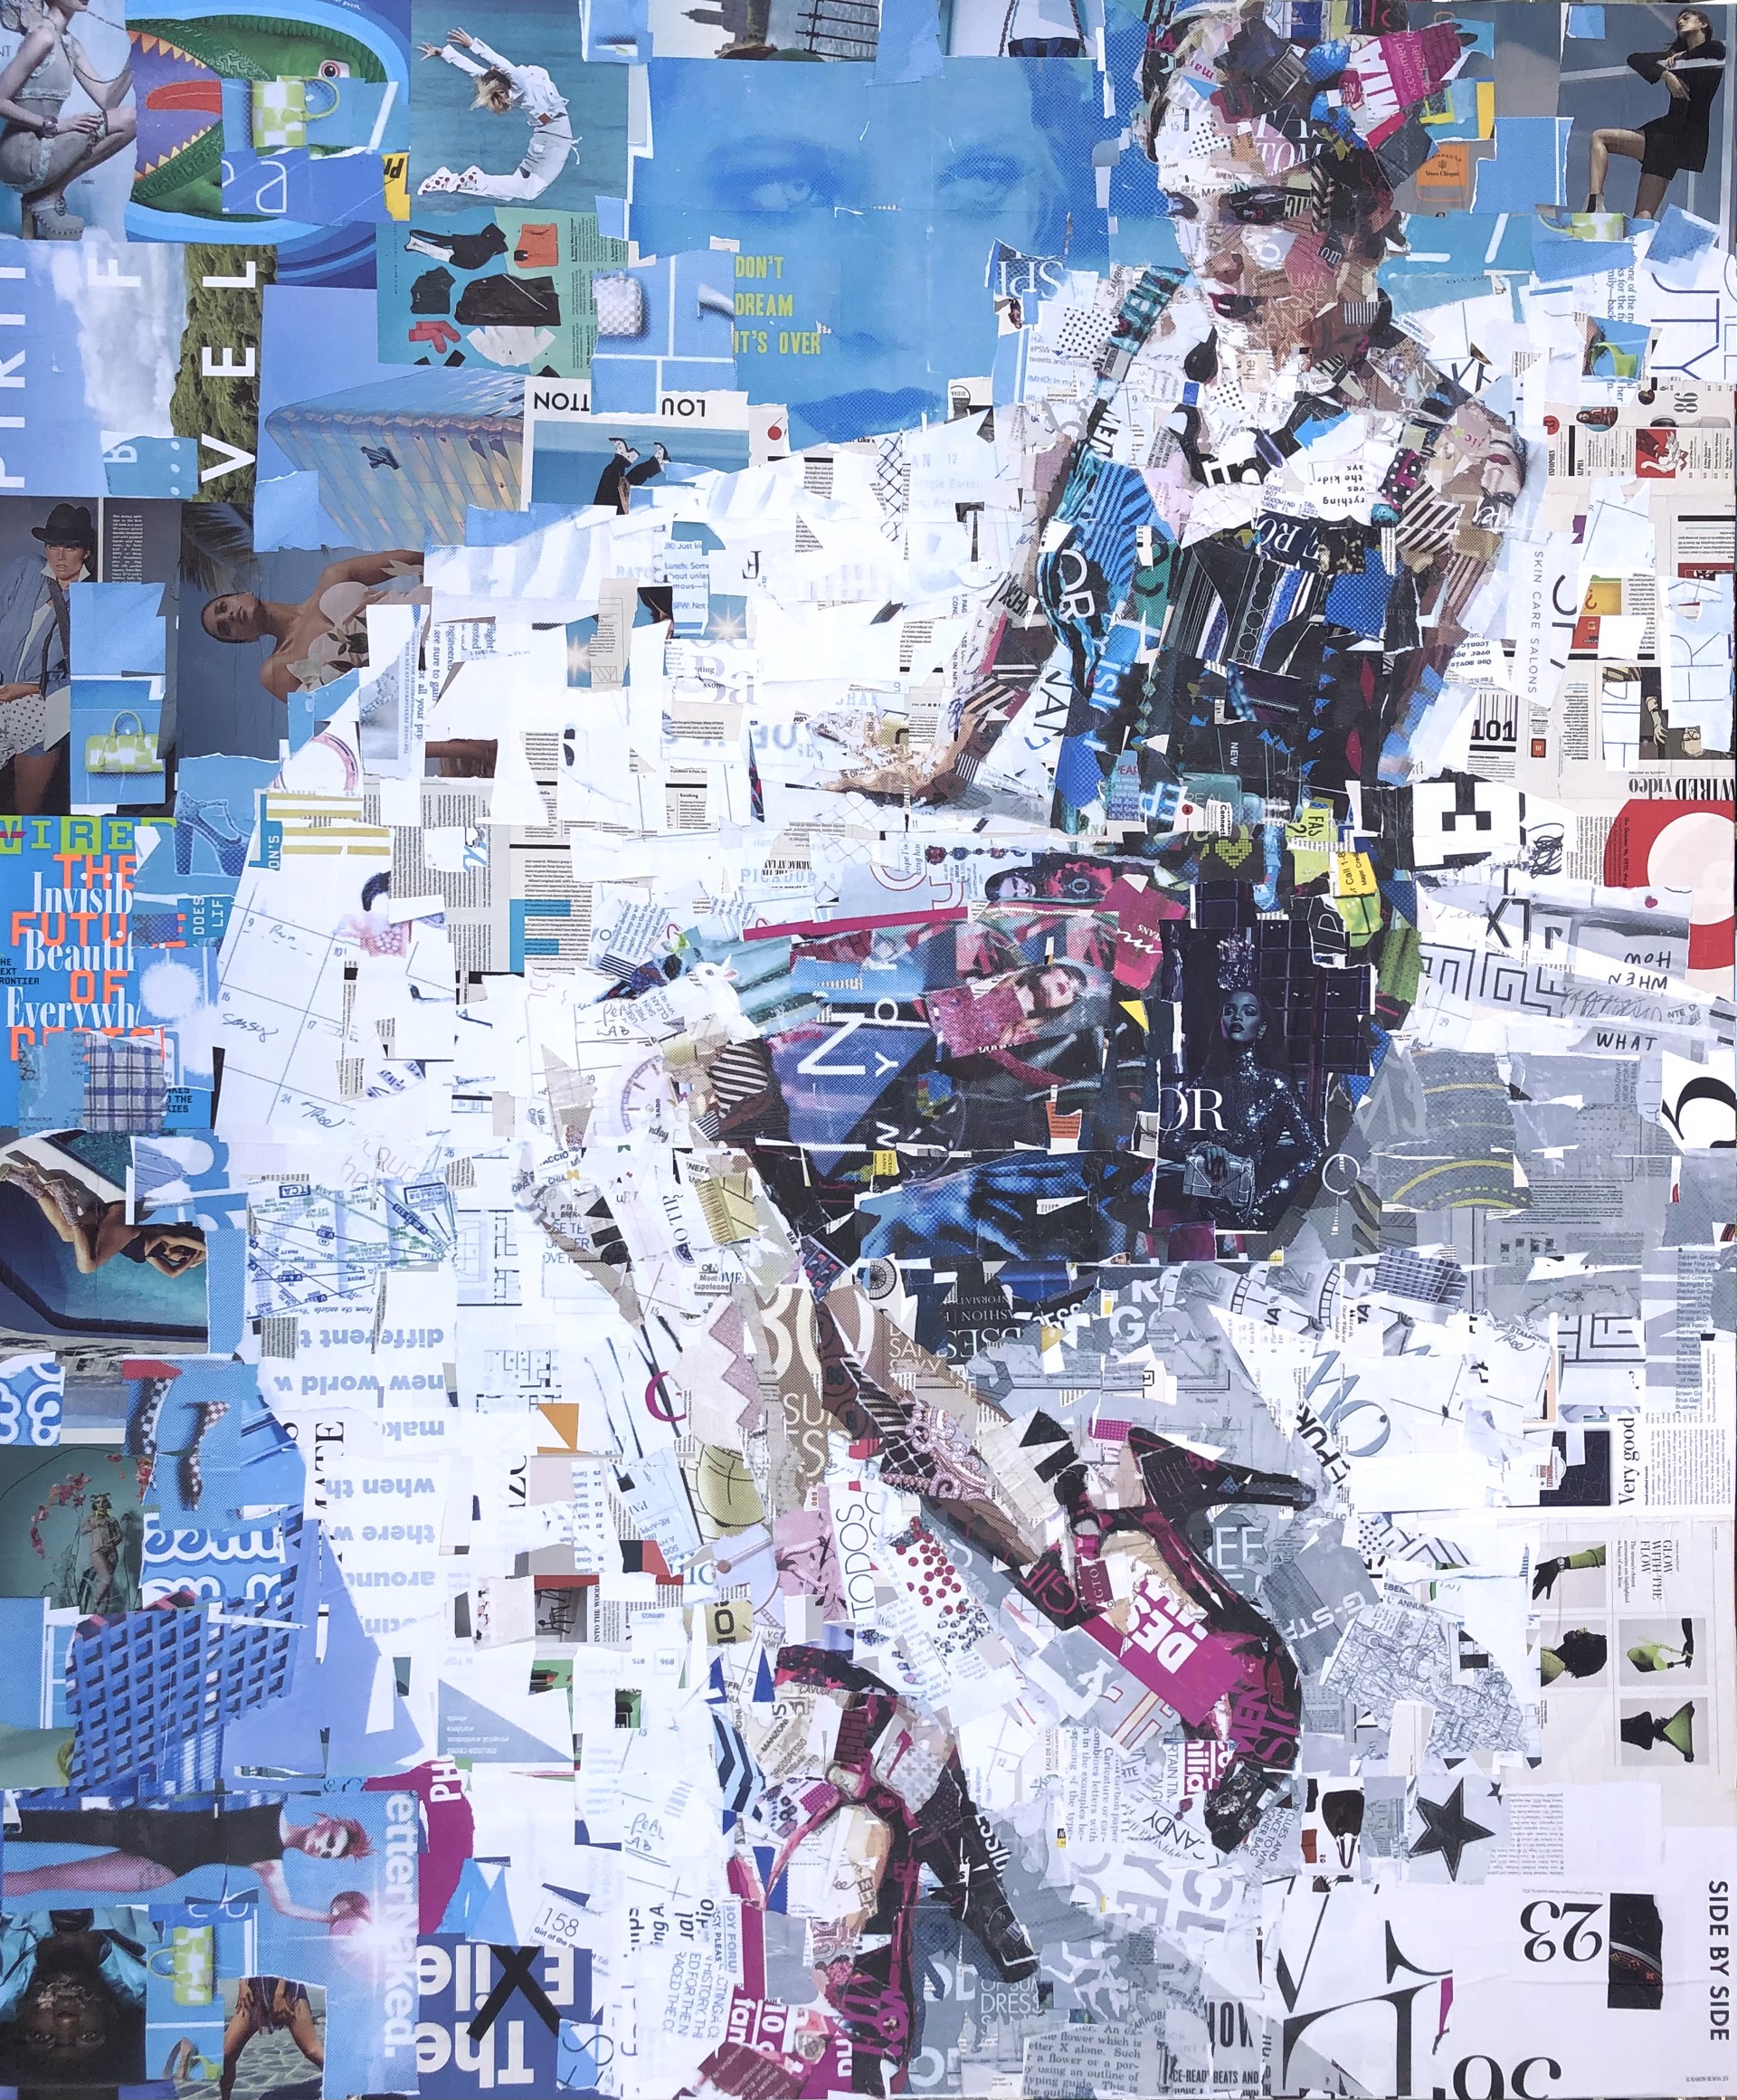 Sassy Dreams by Florida Artist Derek Gores 72"H x 60"W collage on canvas